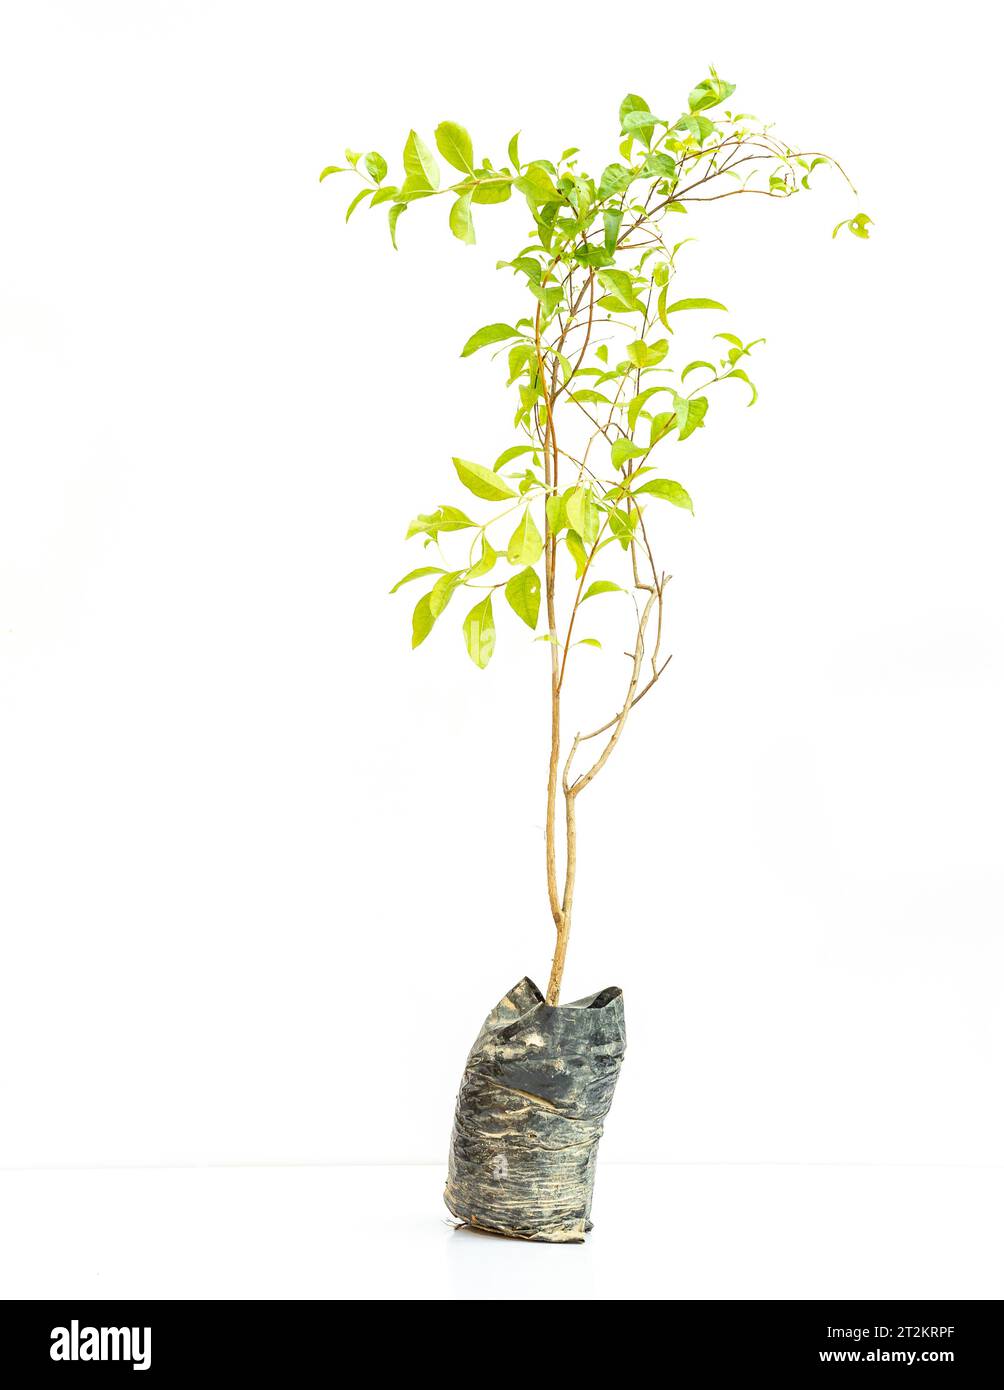 Henna mehandi plant sapling isolated on white background Stock Photo